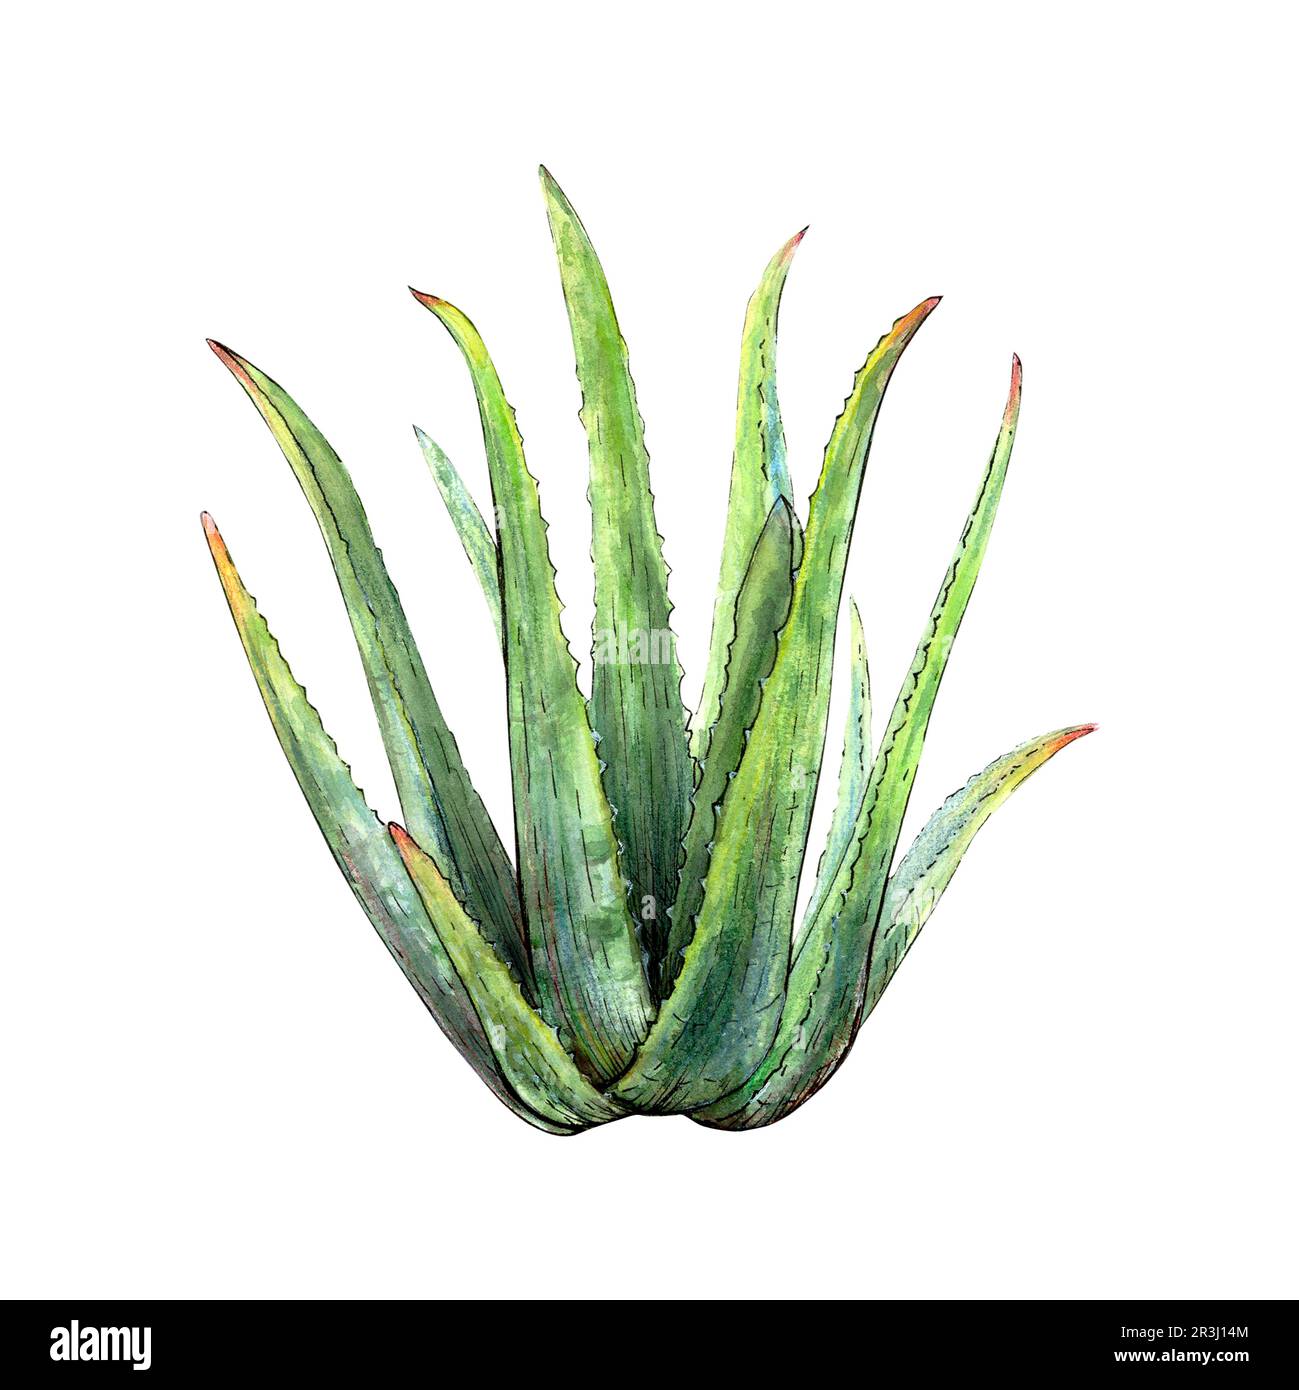 Aquarelle dessin botanique de la plante de vera d'aloès avec des tiges et des feuilles sur fond blanc. Image réaliste et détaillée pour l'illustration, les autocollants Banque D'Images